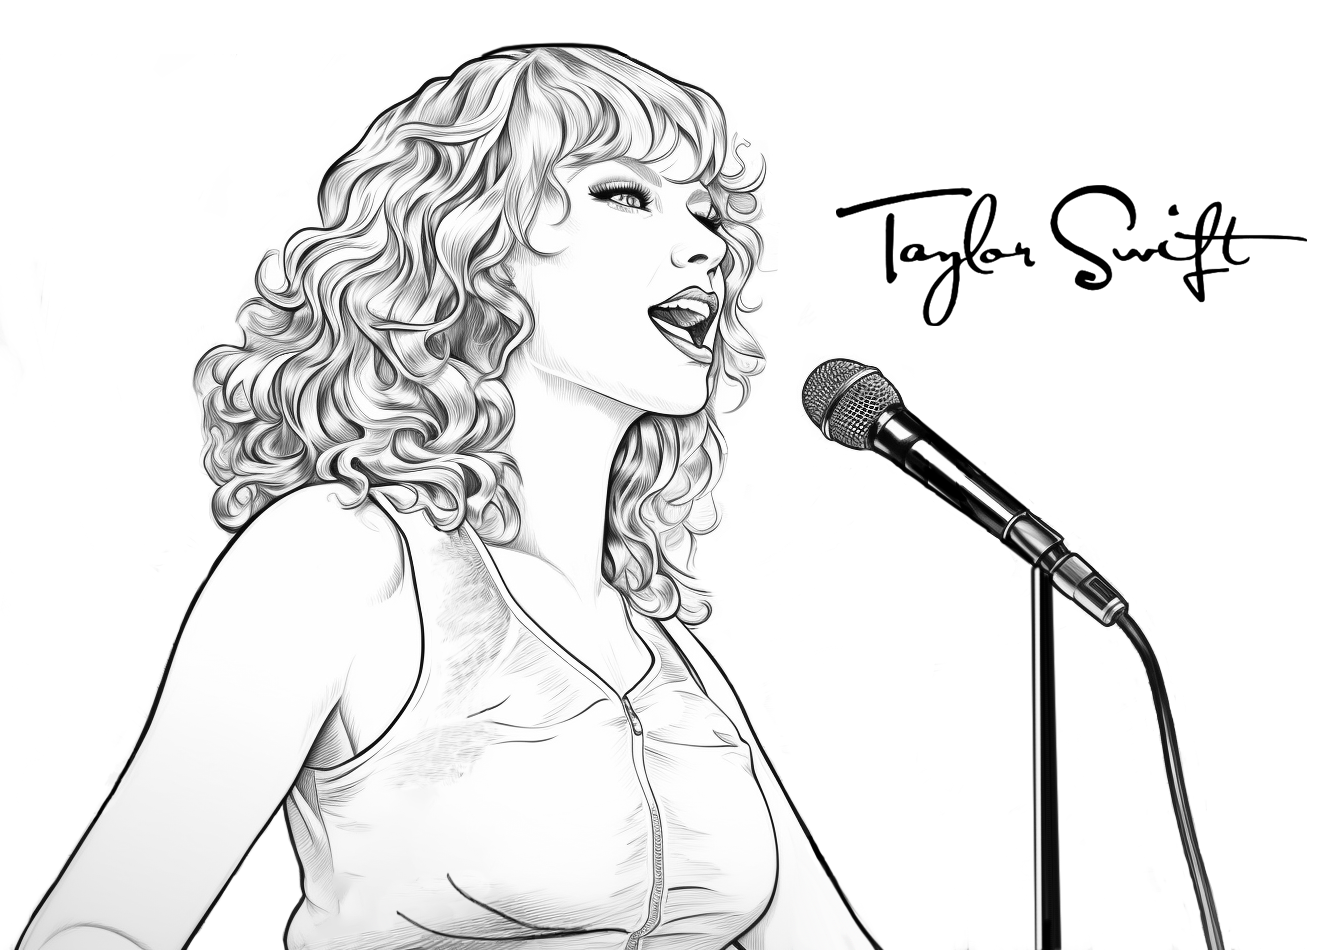 Dibujo en blanco y negro de Taylor Swift cantando delante del micrófono. Firma de Taylor Swift.